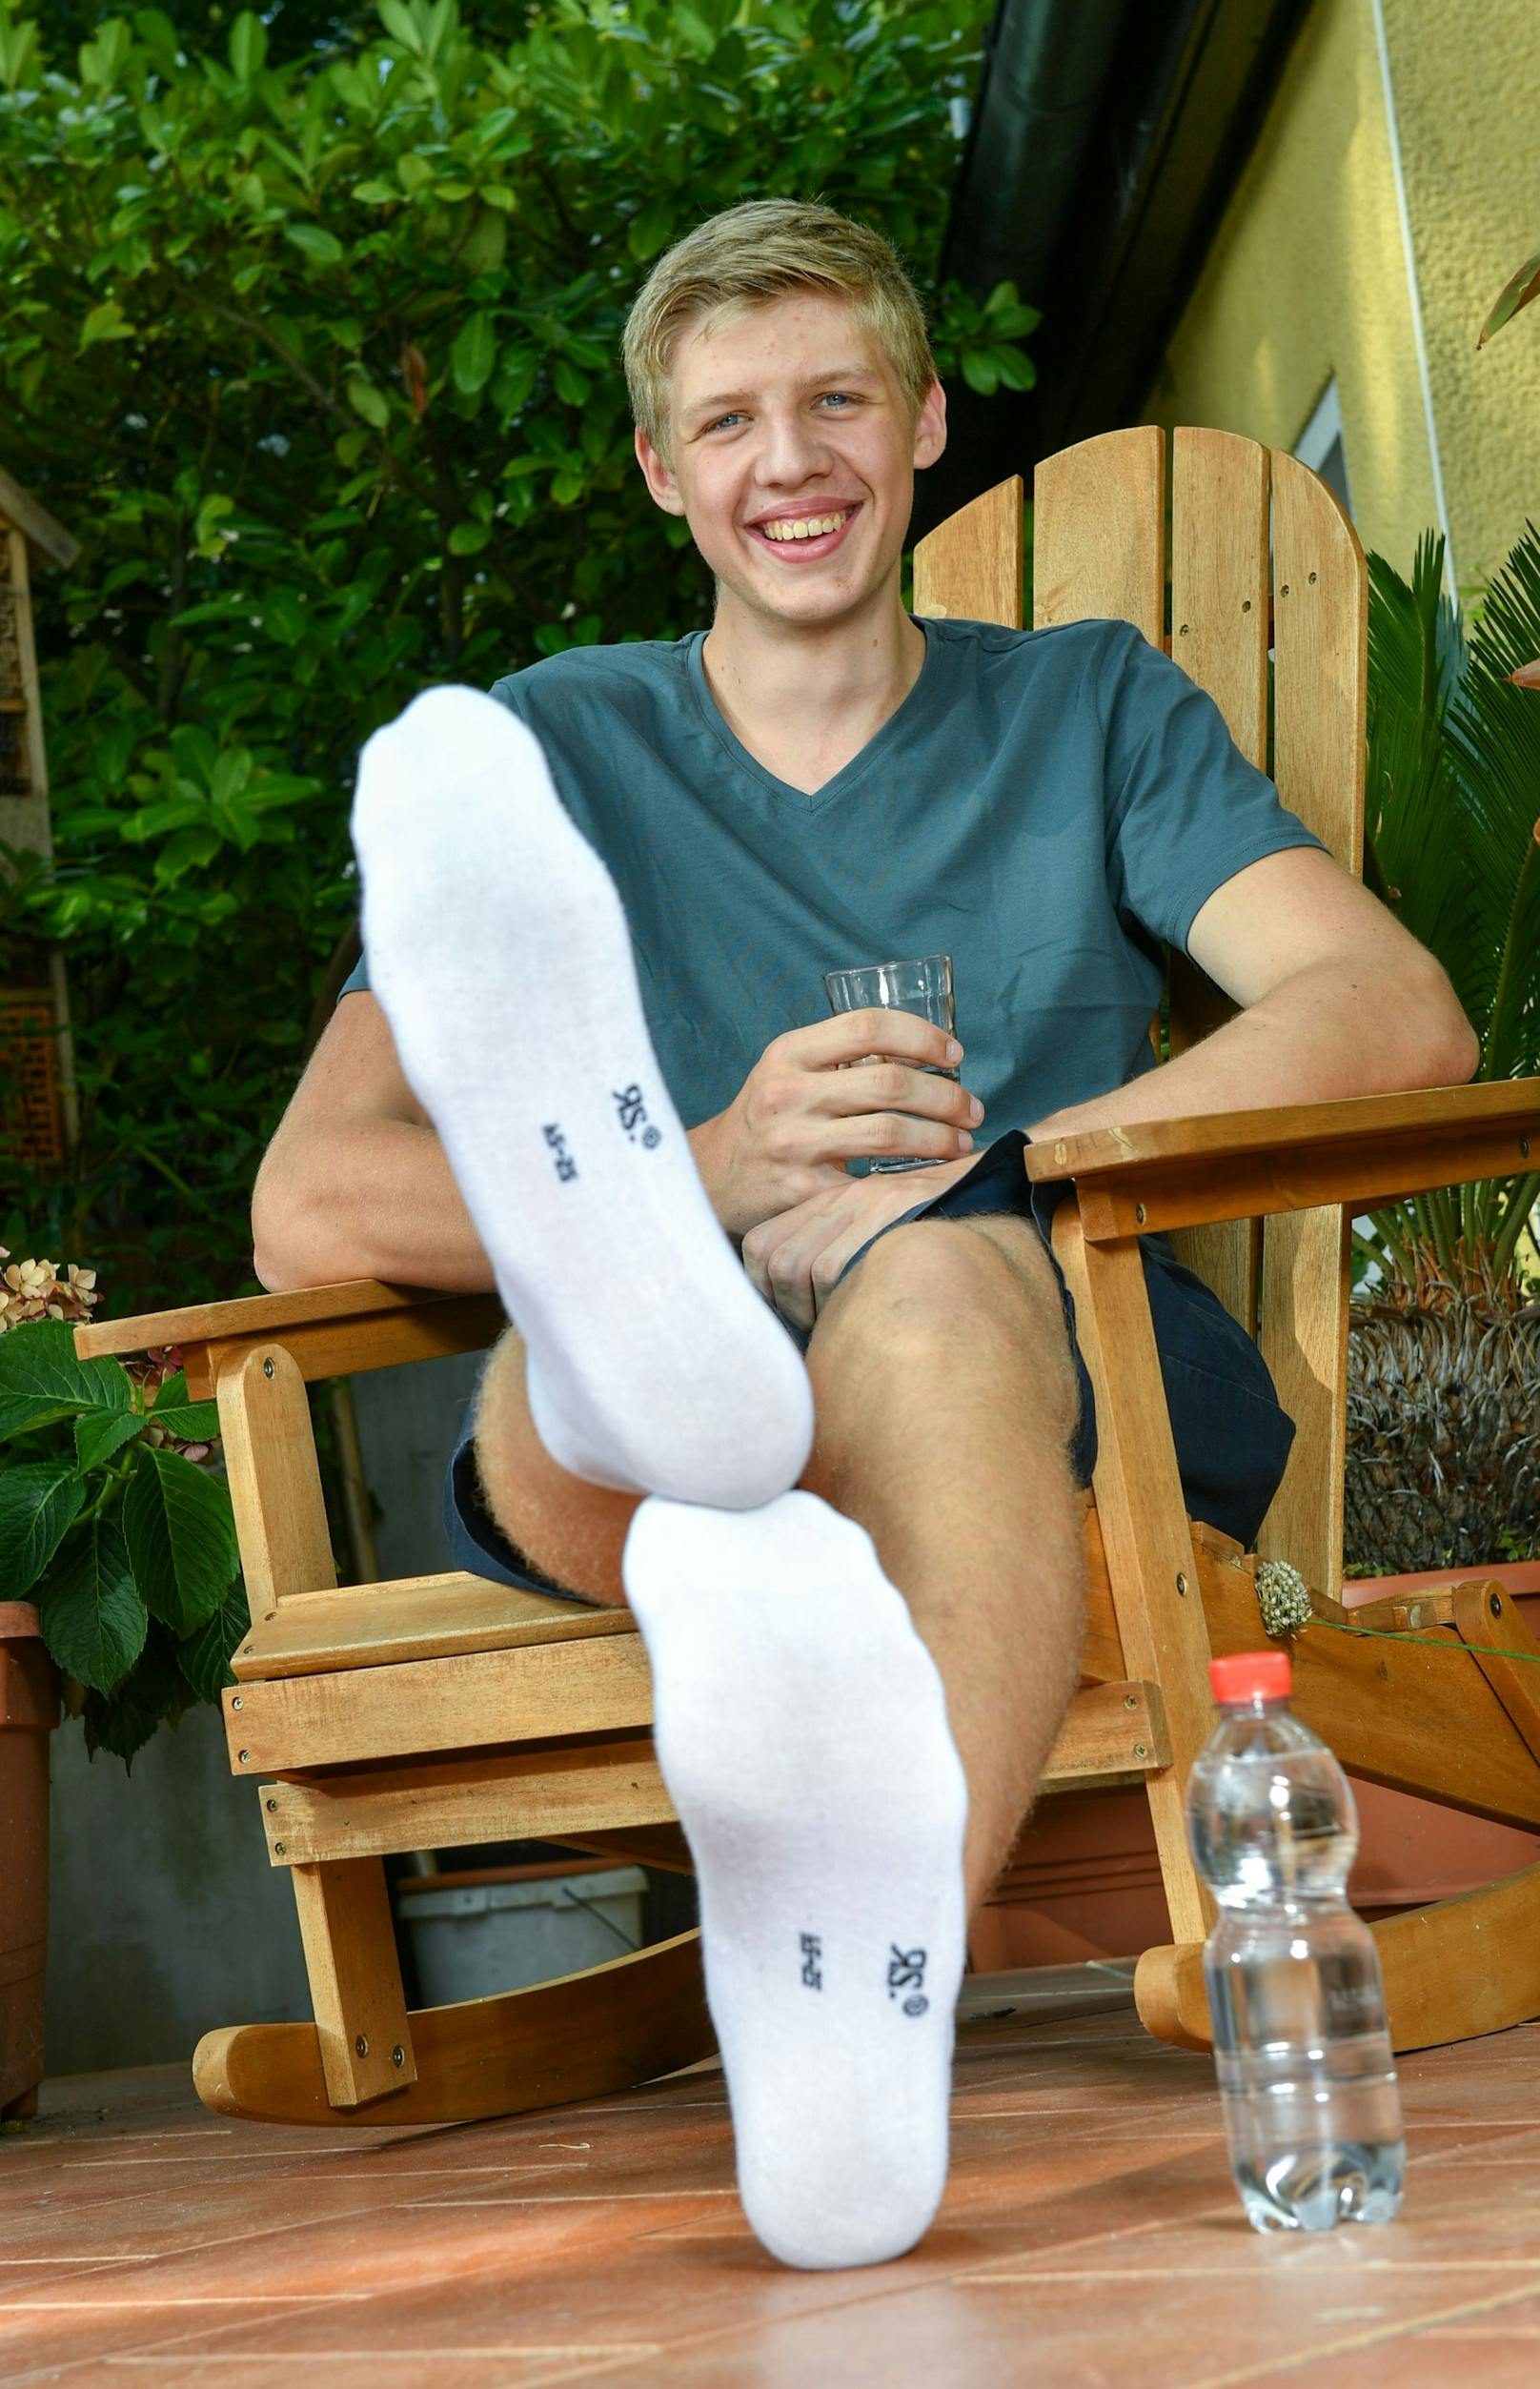 Der 16-jährige Lars Motza aus Berlin ist der Teenager mit den längsten Füßen der Welt. Zum Vergleich: Neben seinen Füßen steht eine 0,5-Liter-Wasserflasche.